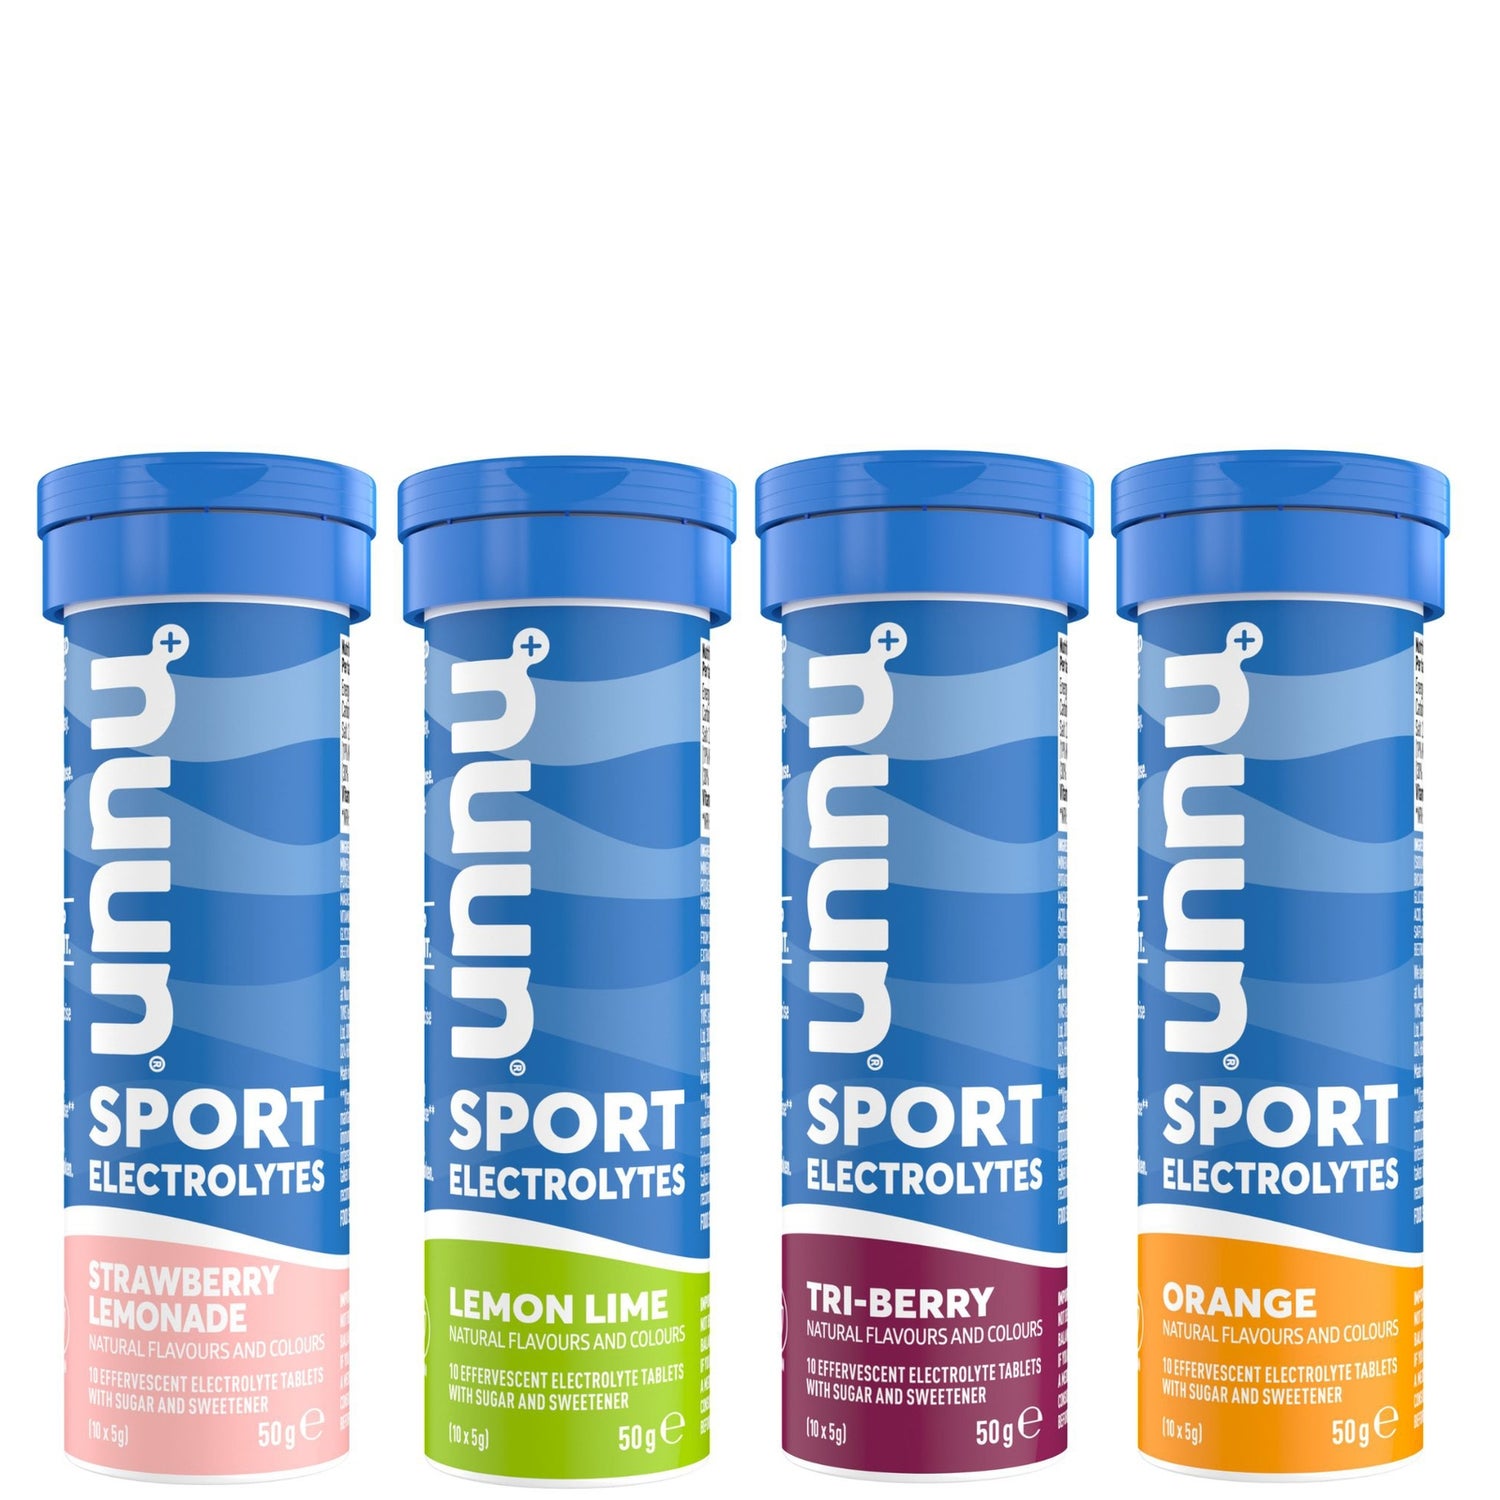 NUUN Sport Variety Pack